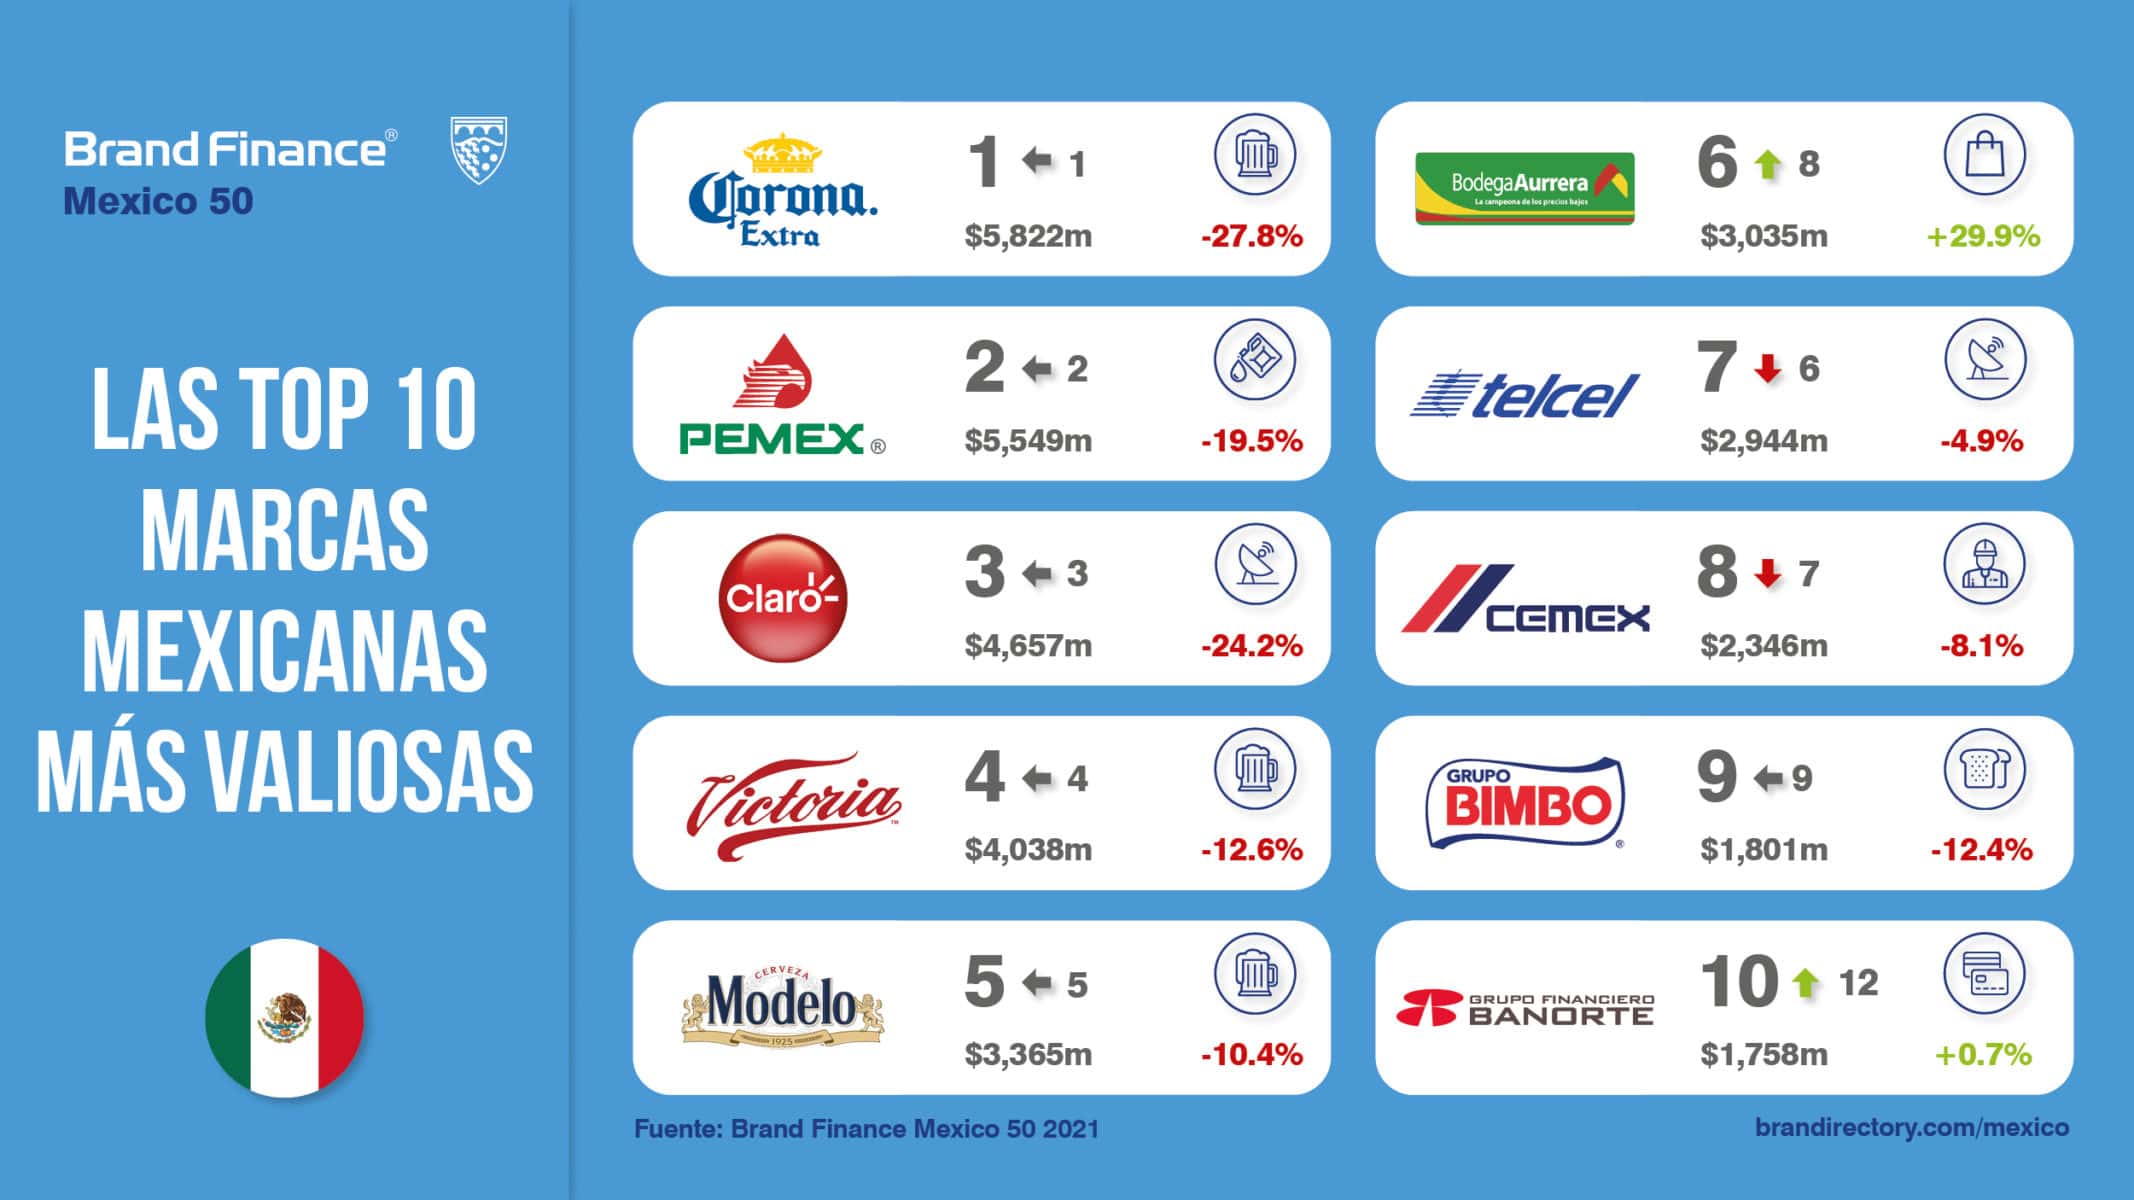 Corona vence al coronavirus como la marca más valiosa de México y de  cervezas del mundo según Brand Finance | Press Release | Brand Finance